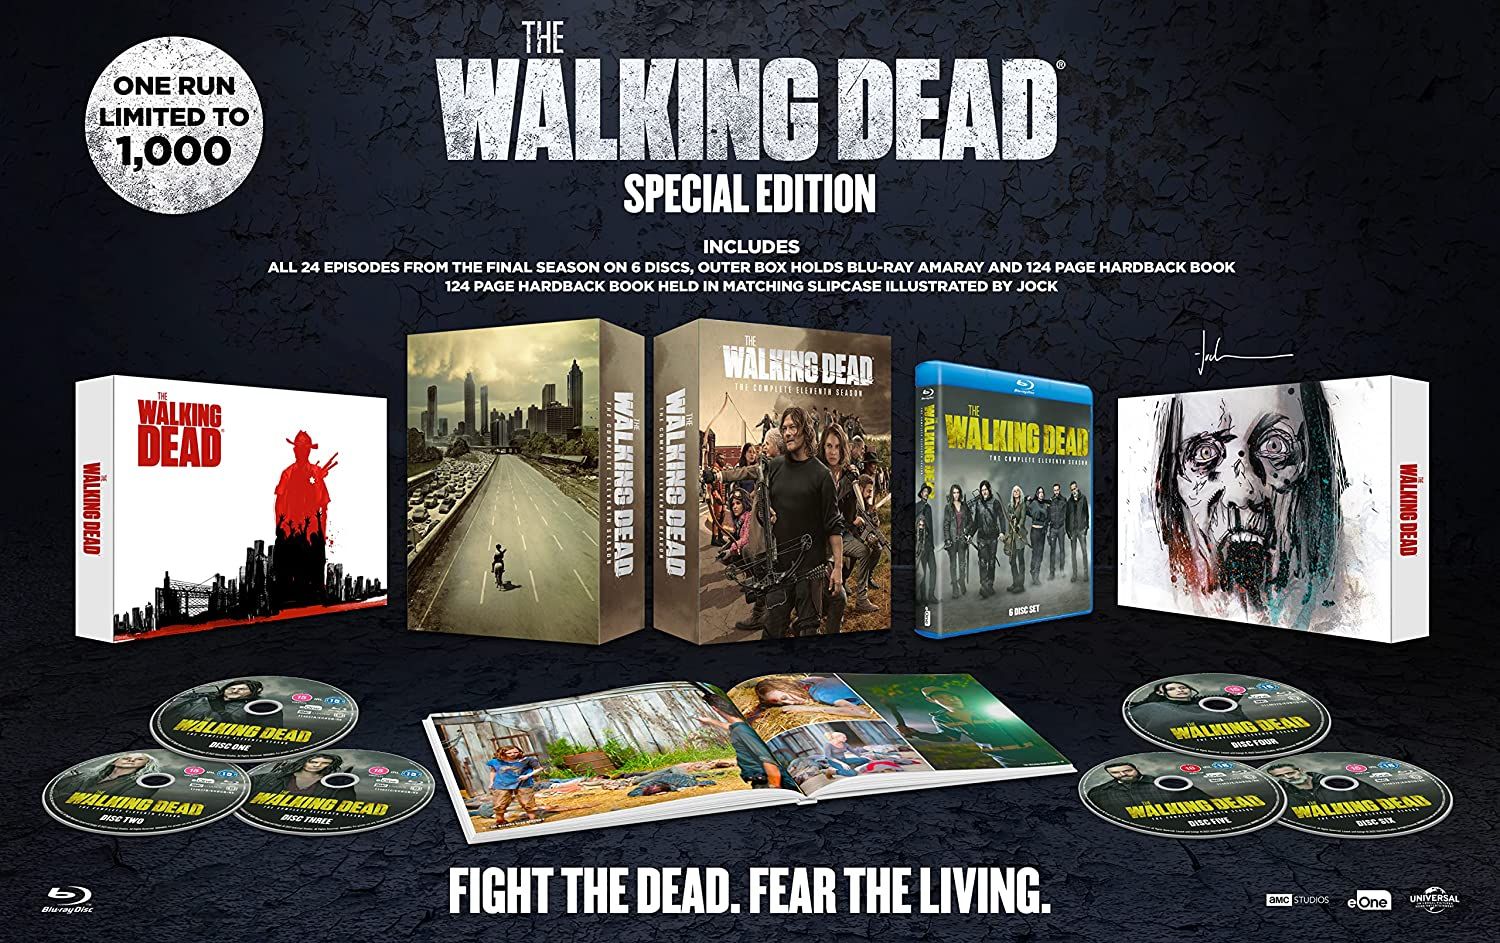 The Walking Dead Top 10 Gifts – The Walking Dead Shop